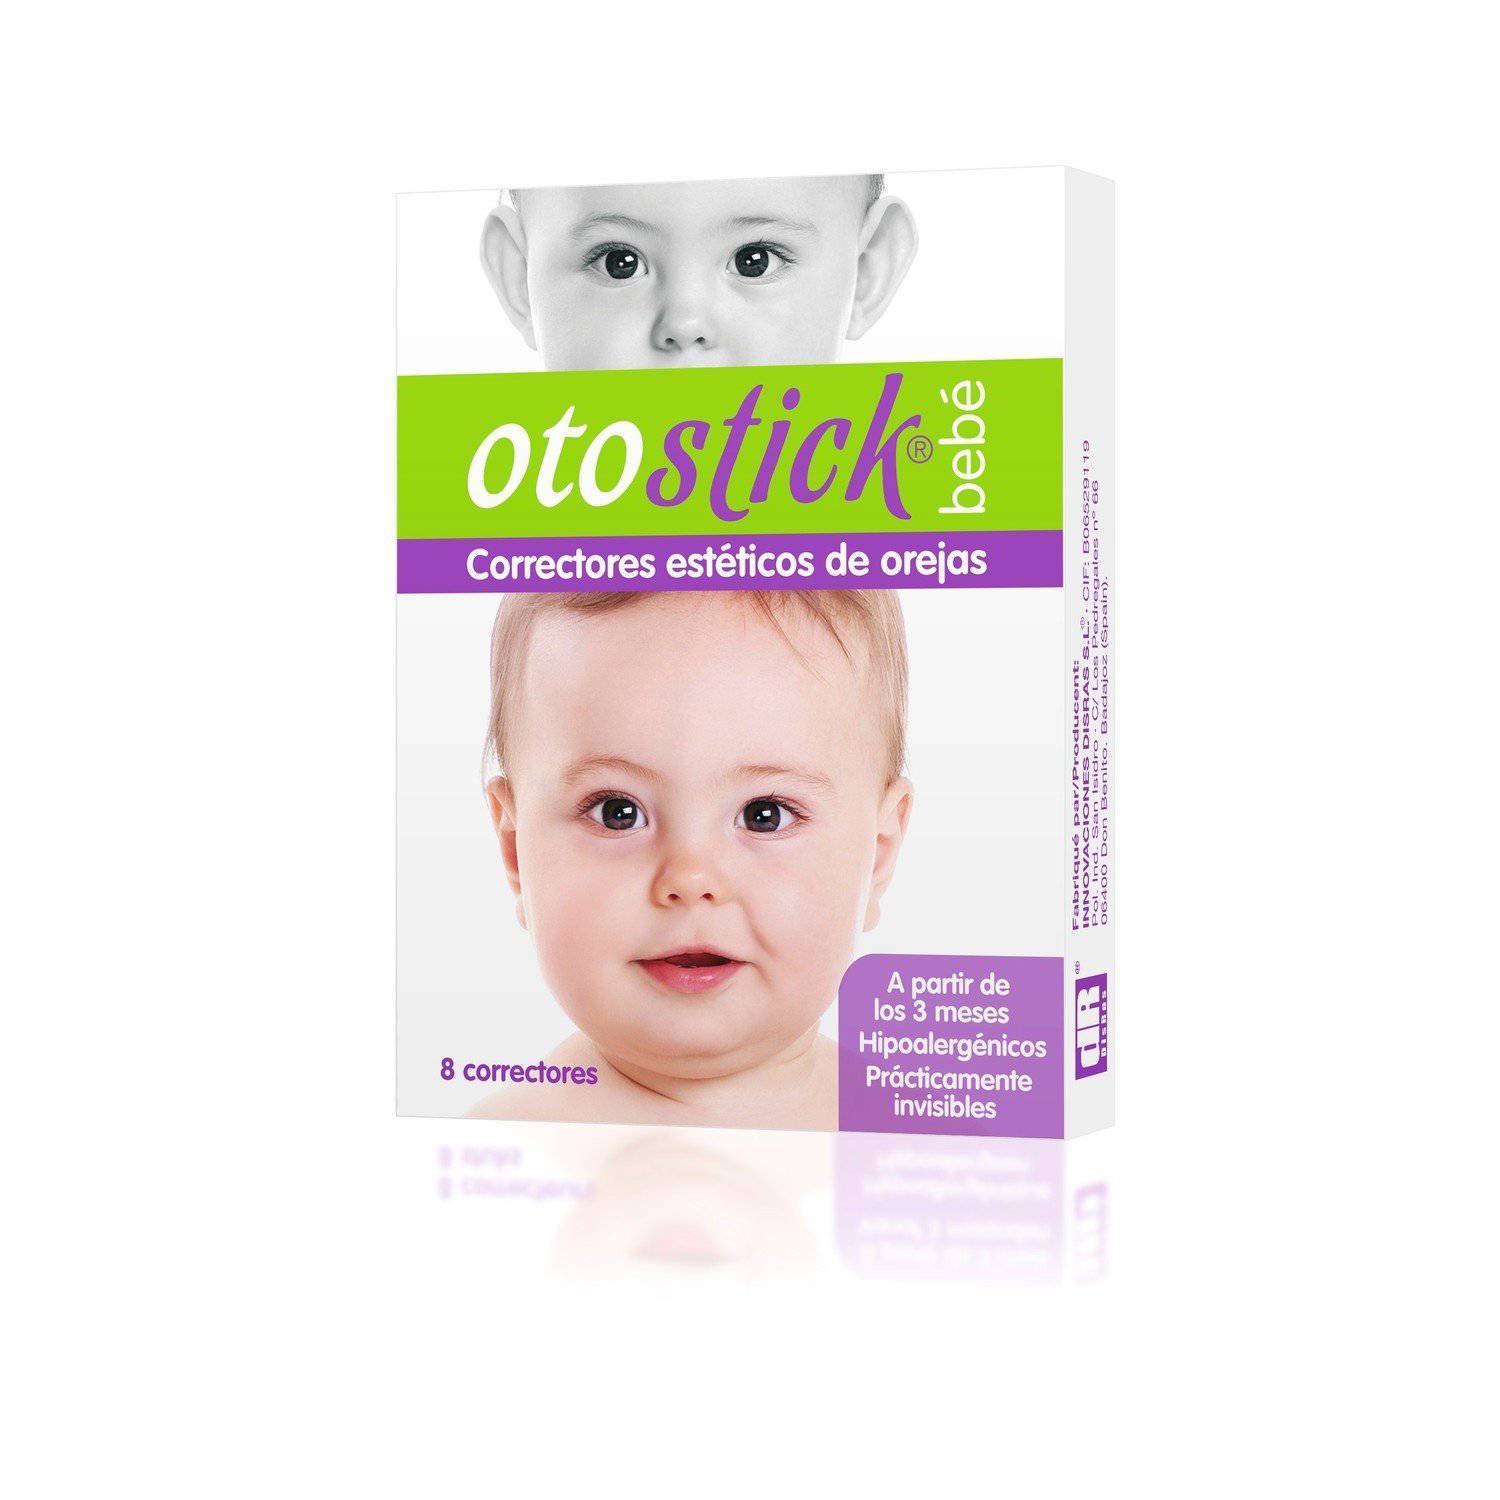 Otostick Corrector de Orejas para bebes – Cosmeticos Venezuela